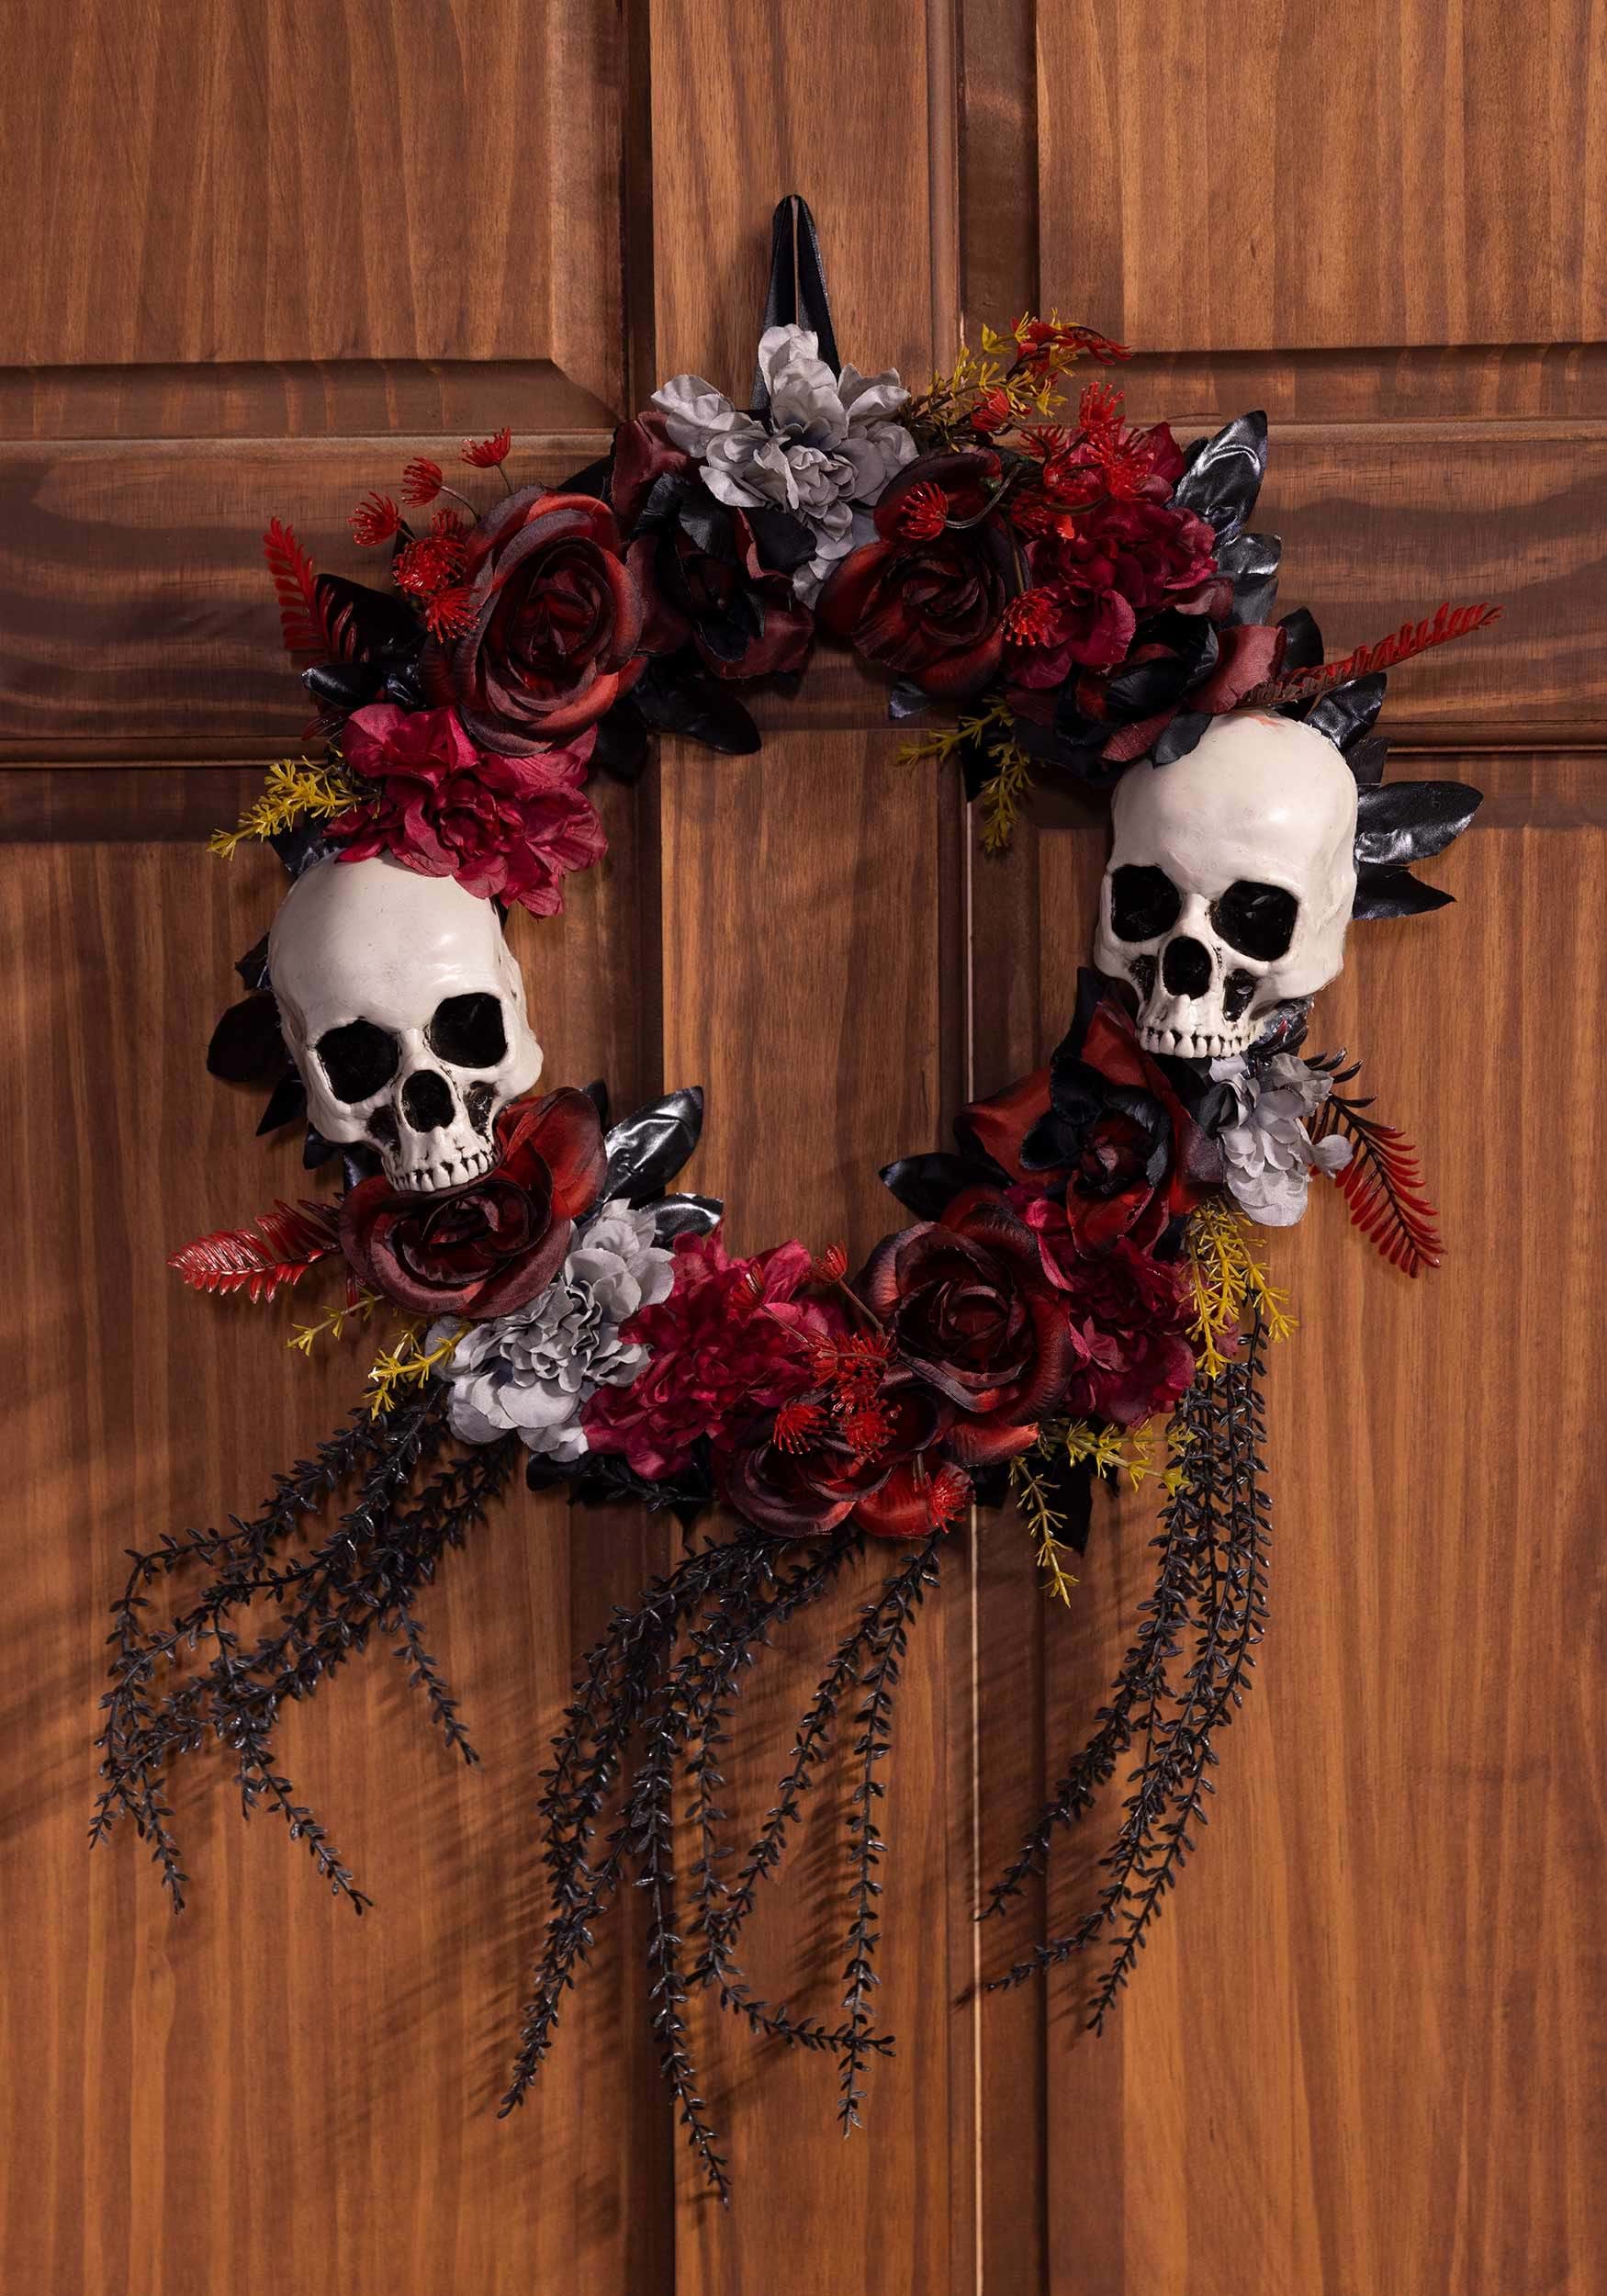 Skull & Roses Wreath Halloween Decoration | Halloween Wreath